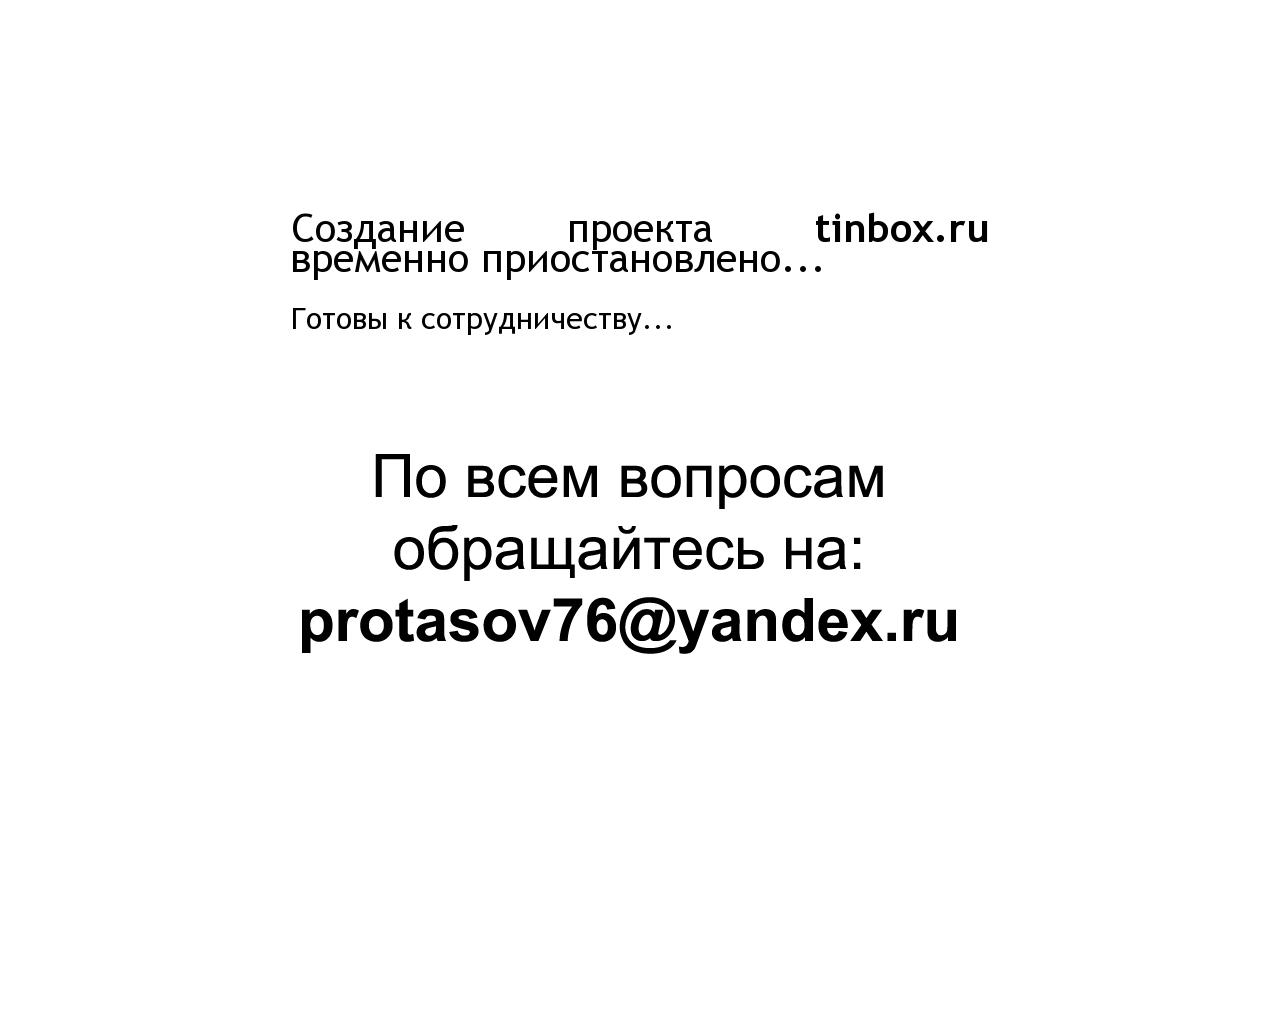 Изображение сайта tinbox.ru в разрешении 1280x1024